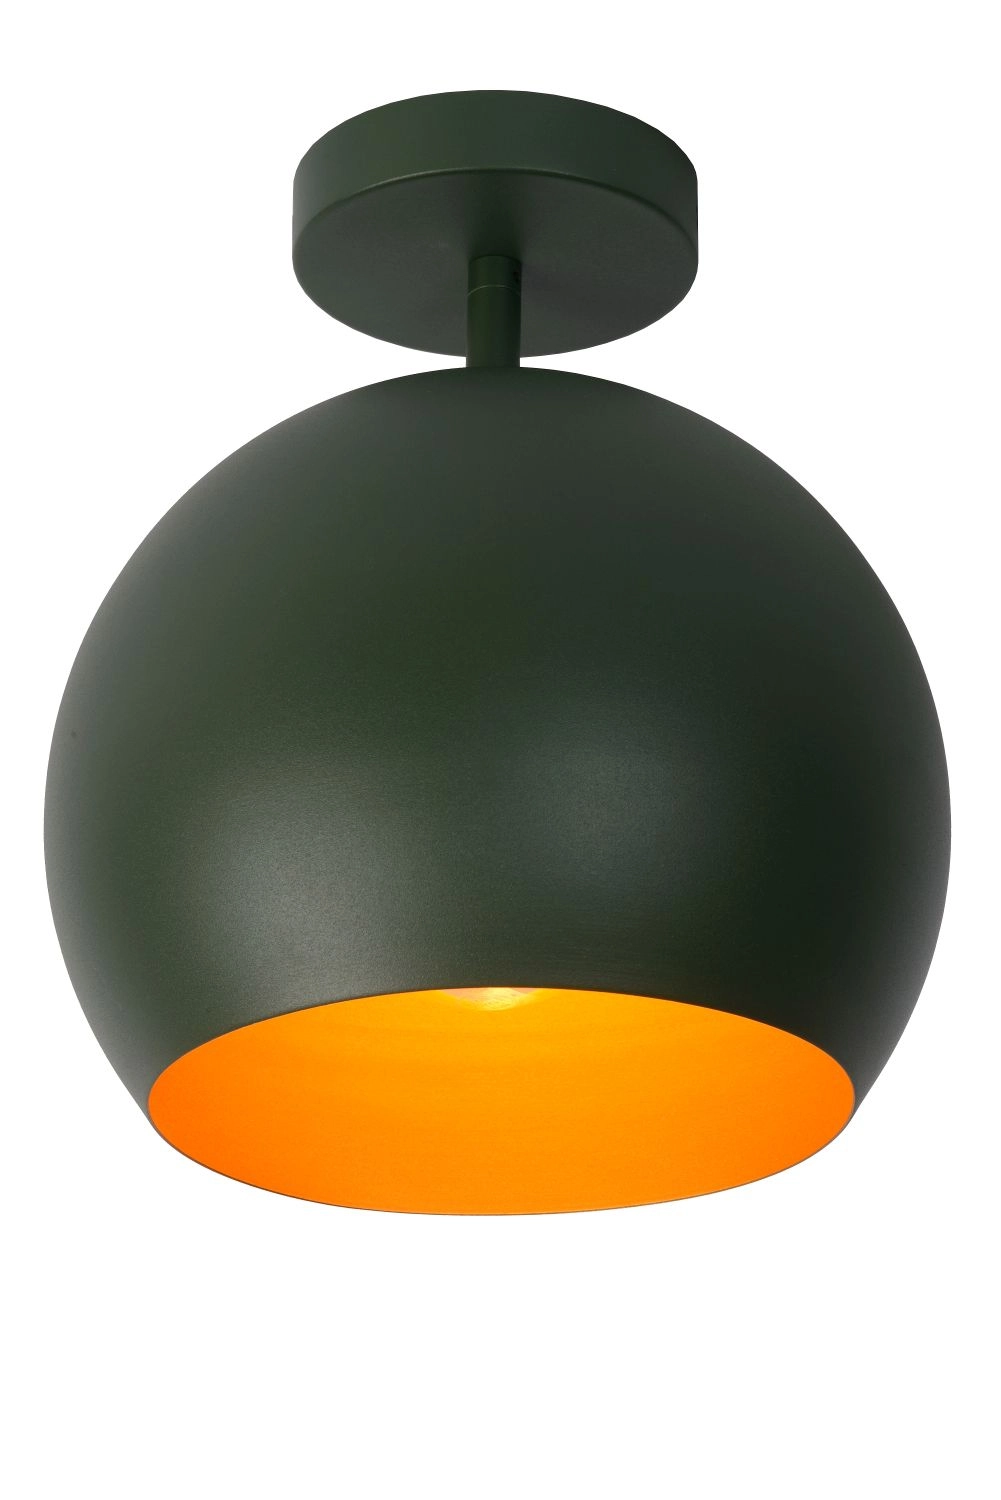 LU 45150/01/33 Lucide BINK - Flush ceiling light - Ø 24,5 cm - 1xE27 - Green